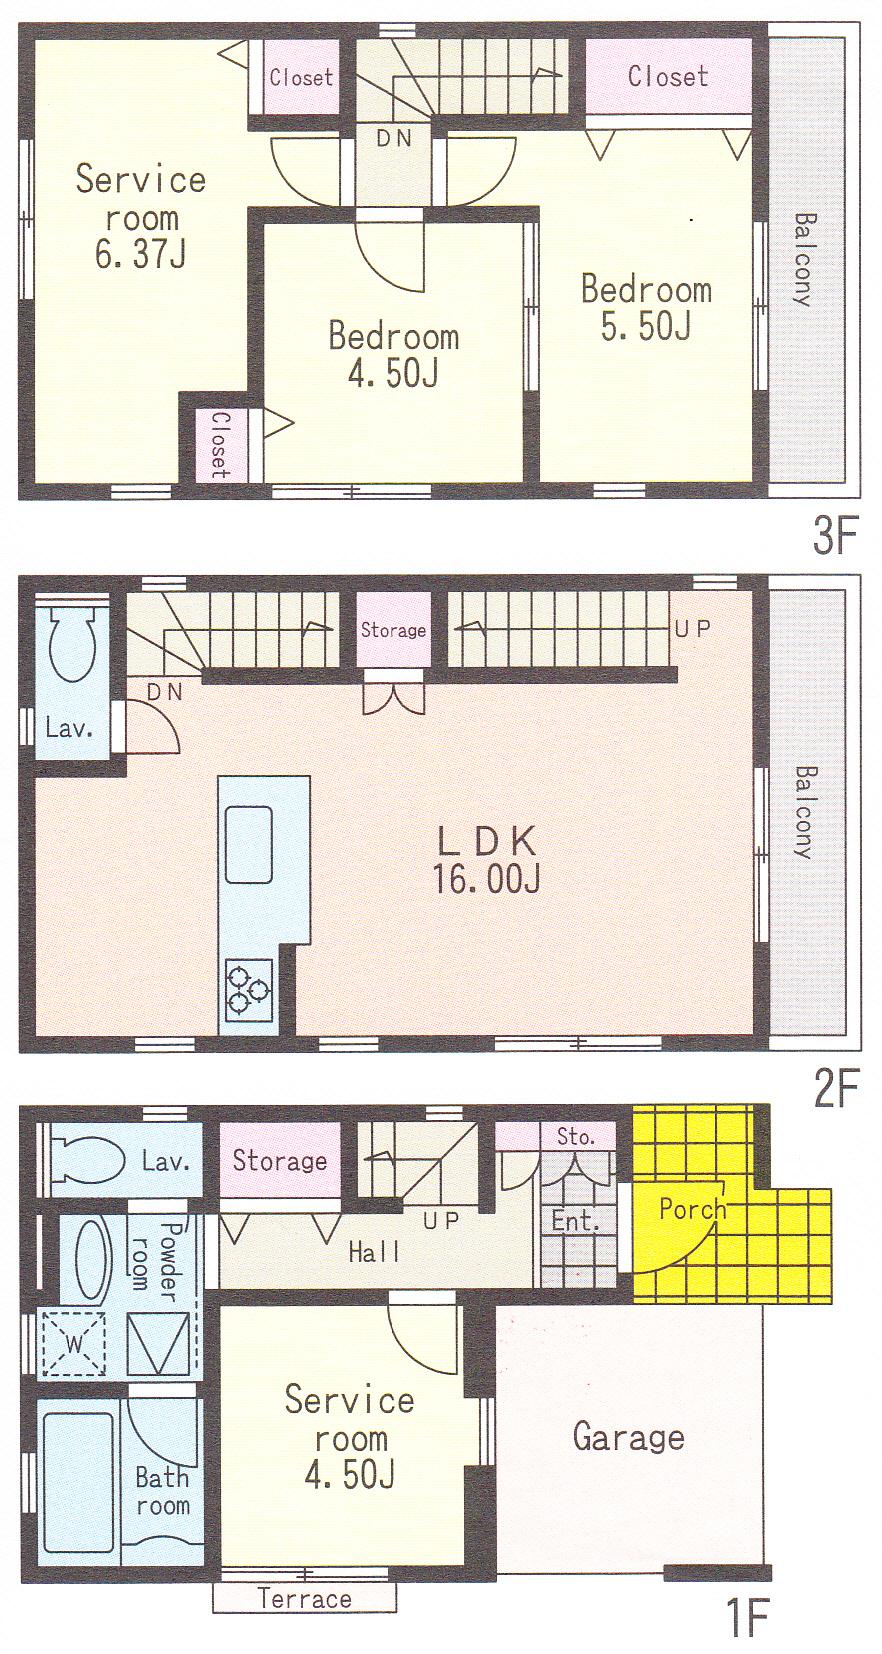 Floor plan. (A Building), Price 29,800,000 yen, 2LDK+2S, Land area 55.93 sq m , Building area 99.6 sq m